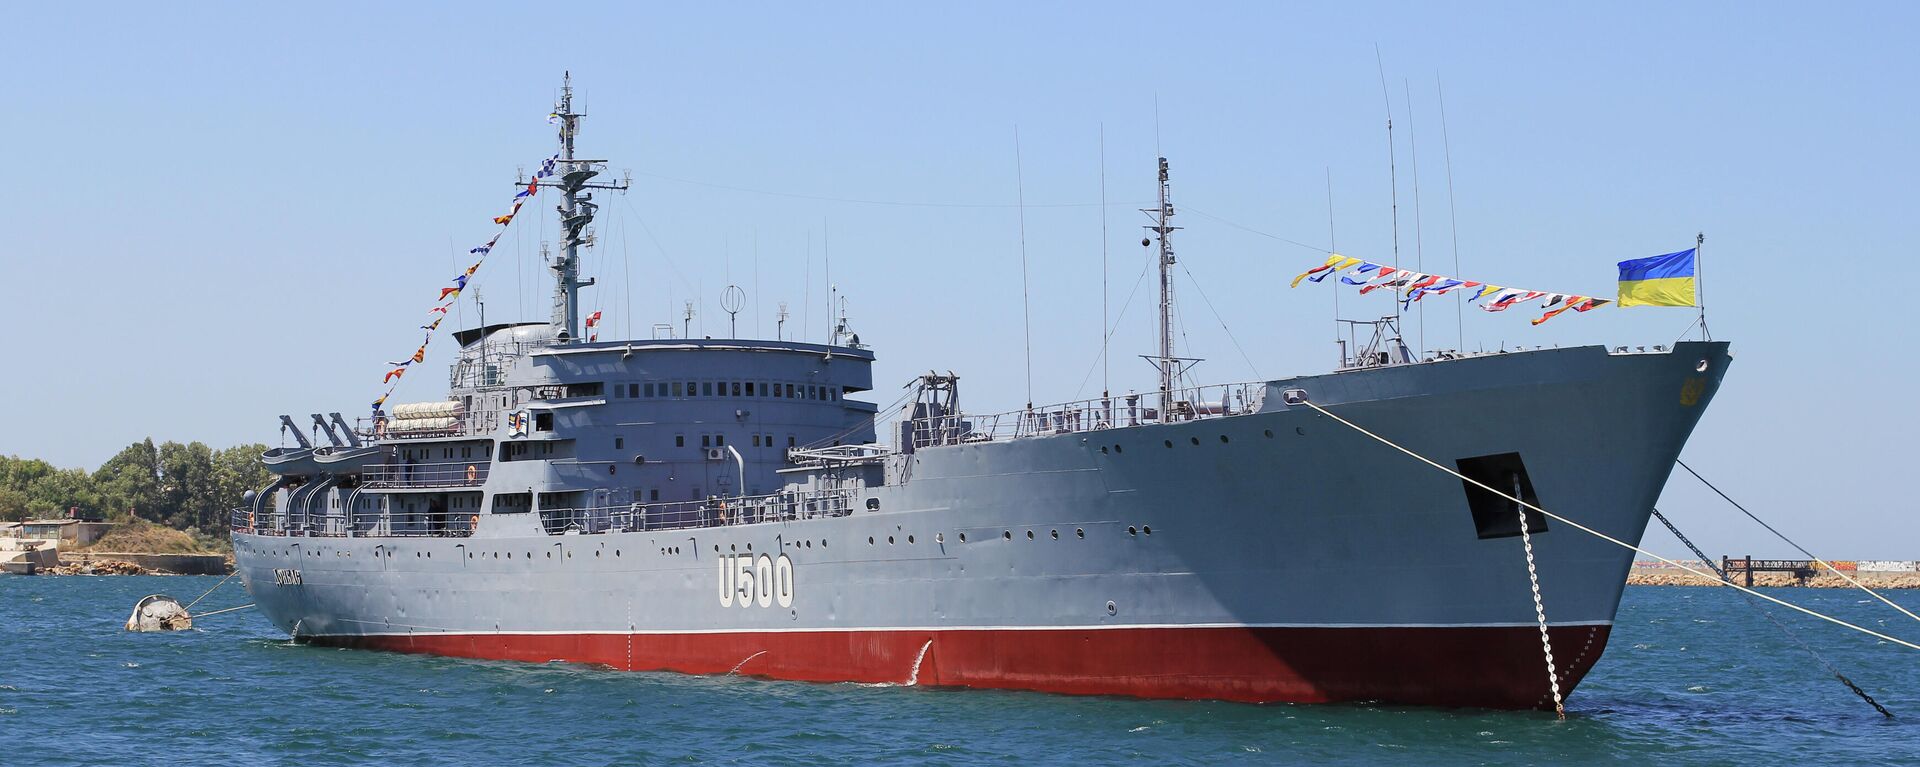 El buque 'Donbass' de la Armada de Ucrania - Sputnik Mundo, 1920, 09.12.2021